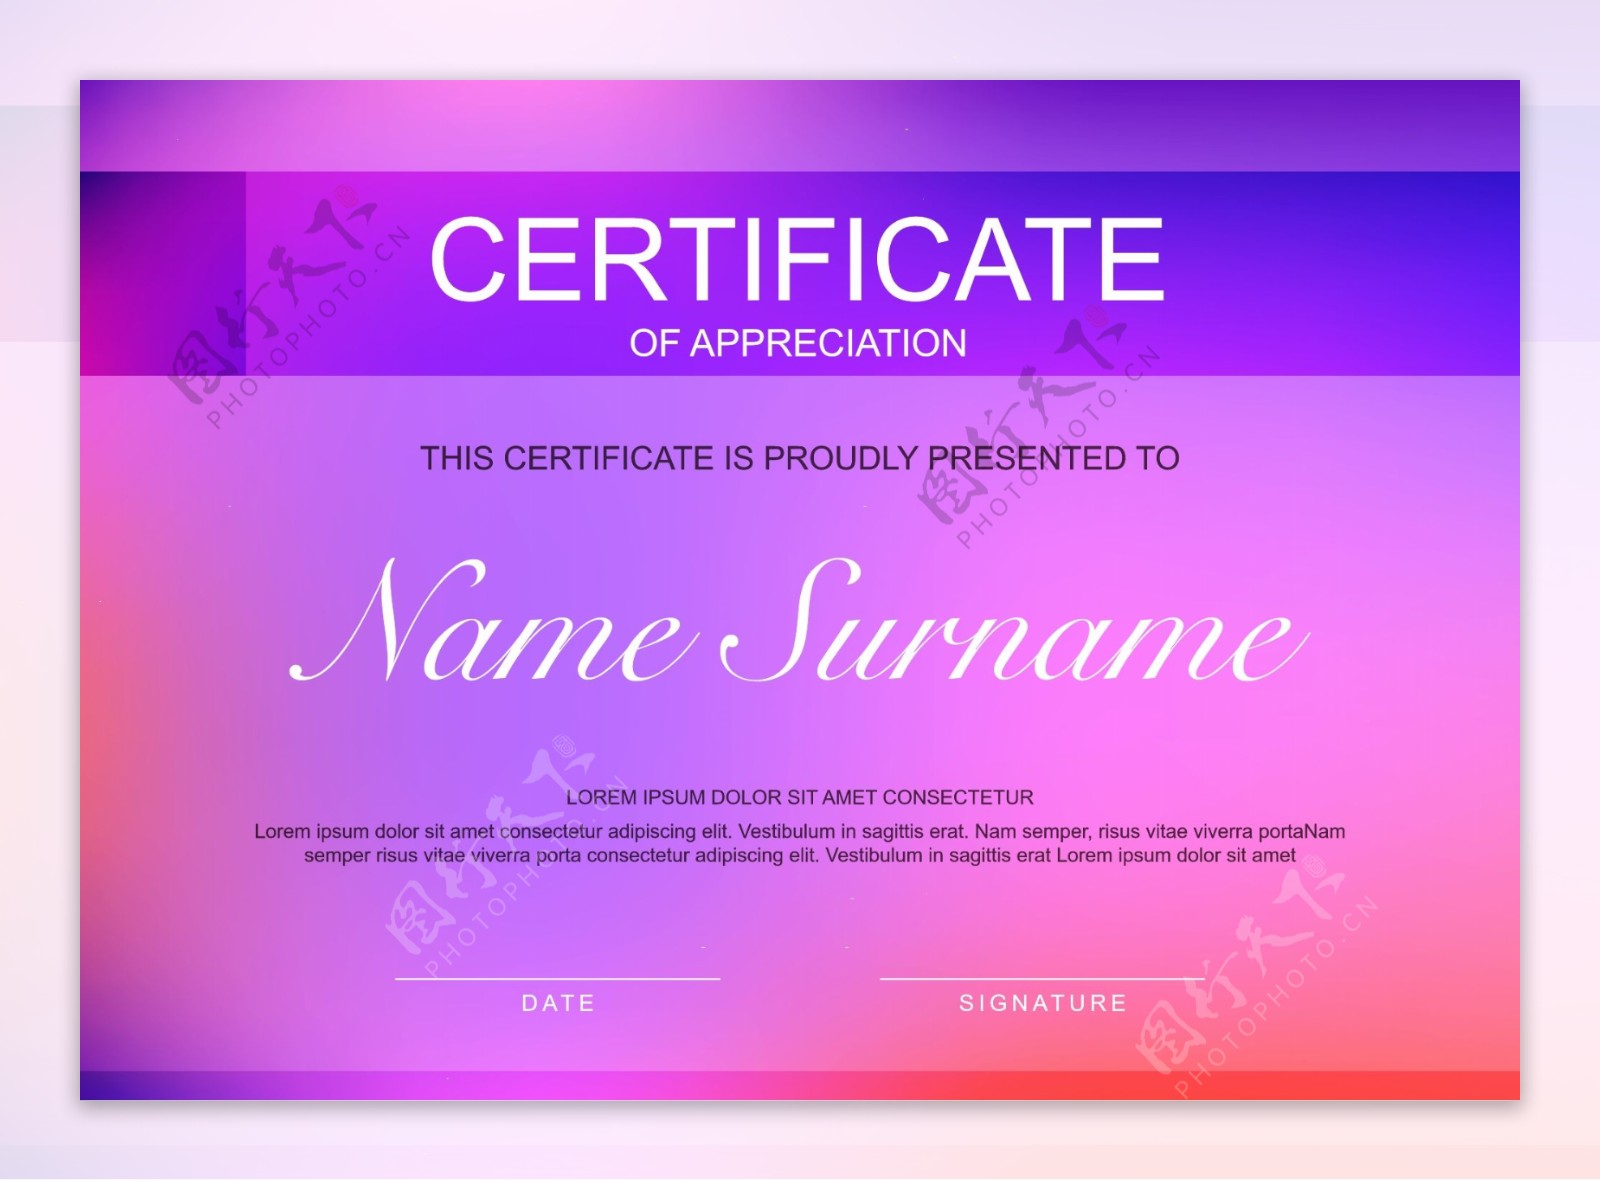 粉红色紫色简单时尚的个人荣誉证书